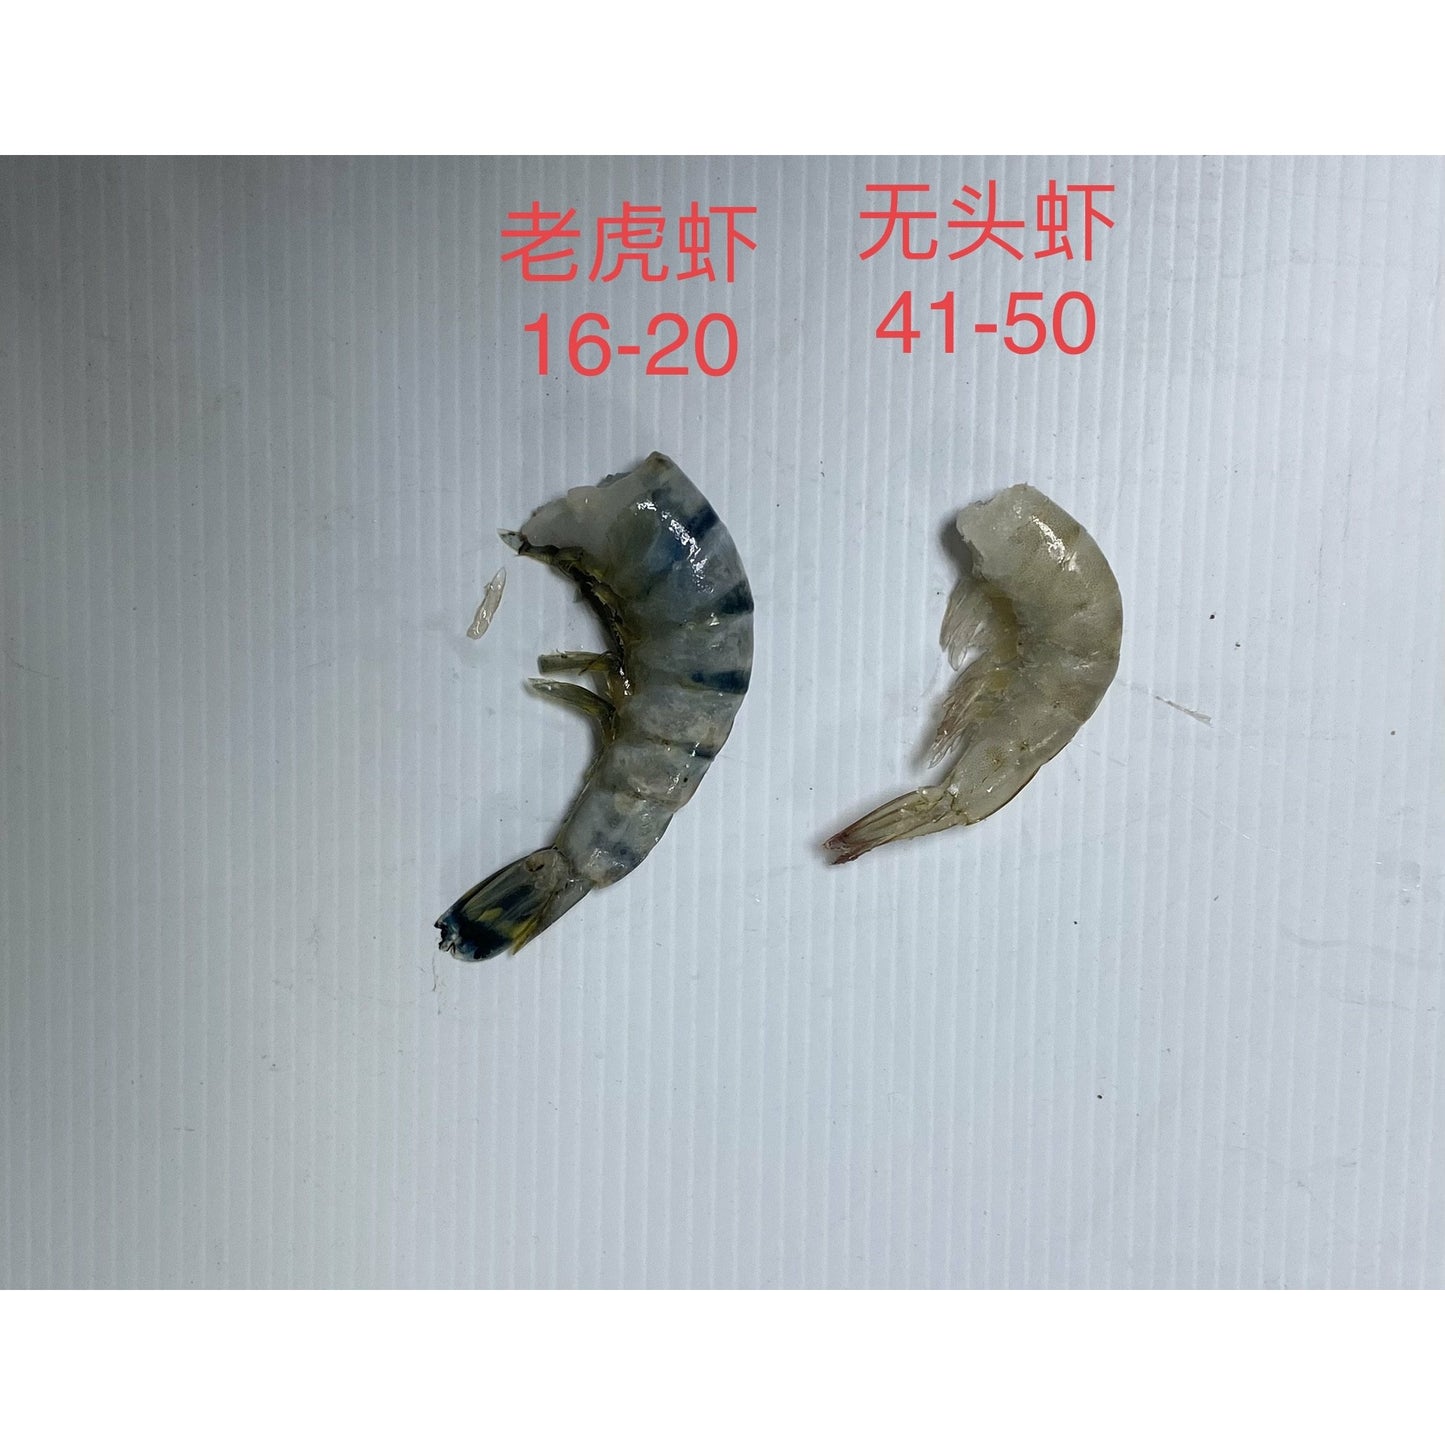 16-20 large tiger prawns (0.8-1 lbs)